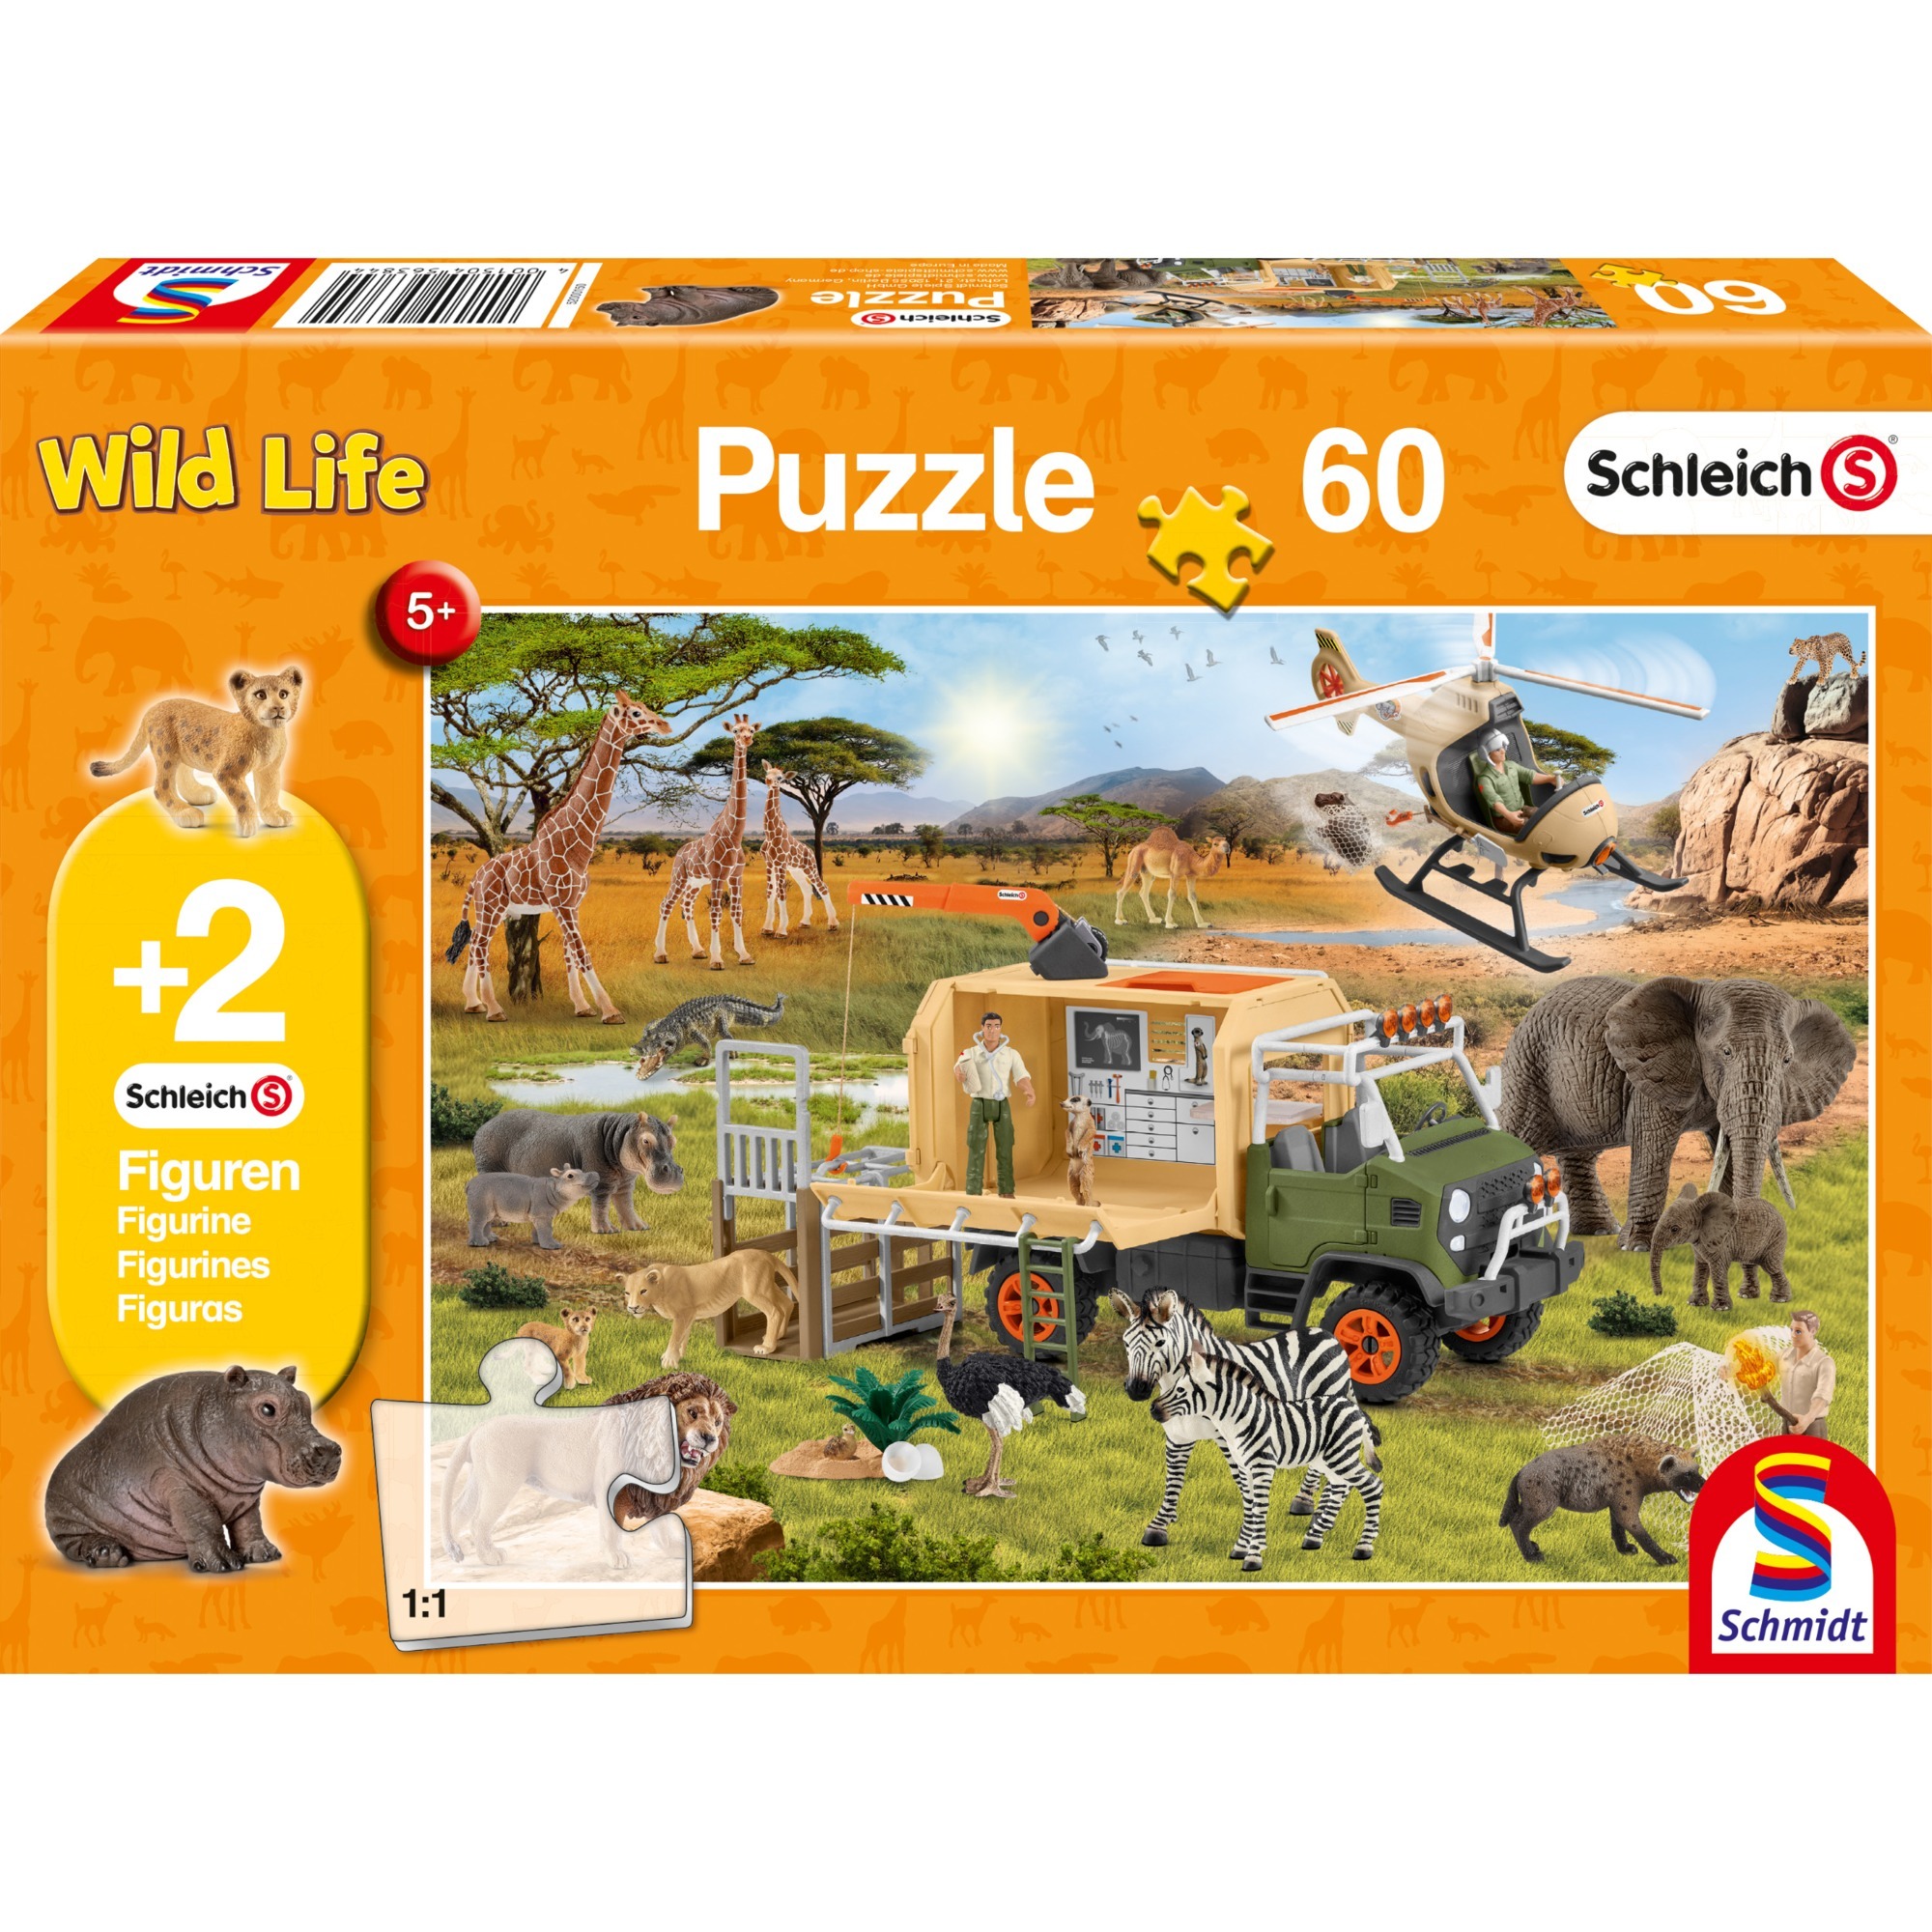 Image of Alternate - Schleich Puzzle Abenteuerliche Tierrettung online einkaufen bei Alternate